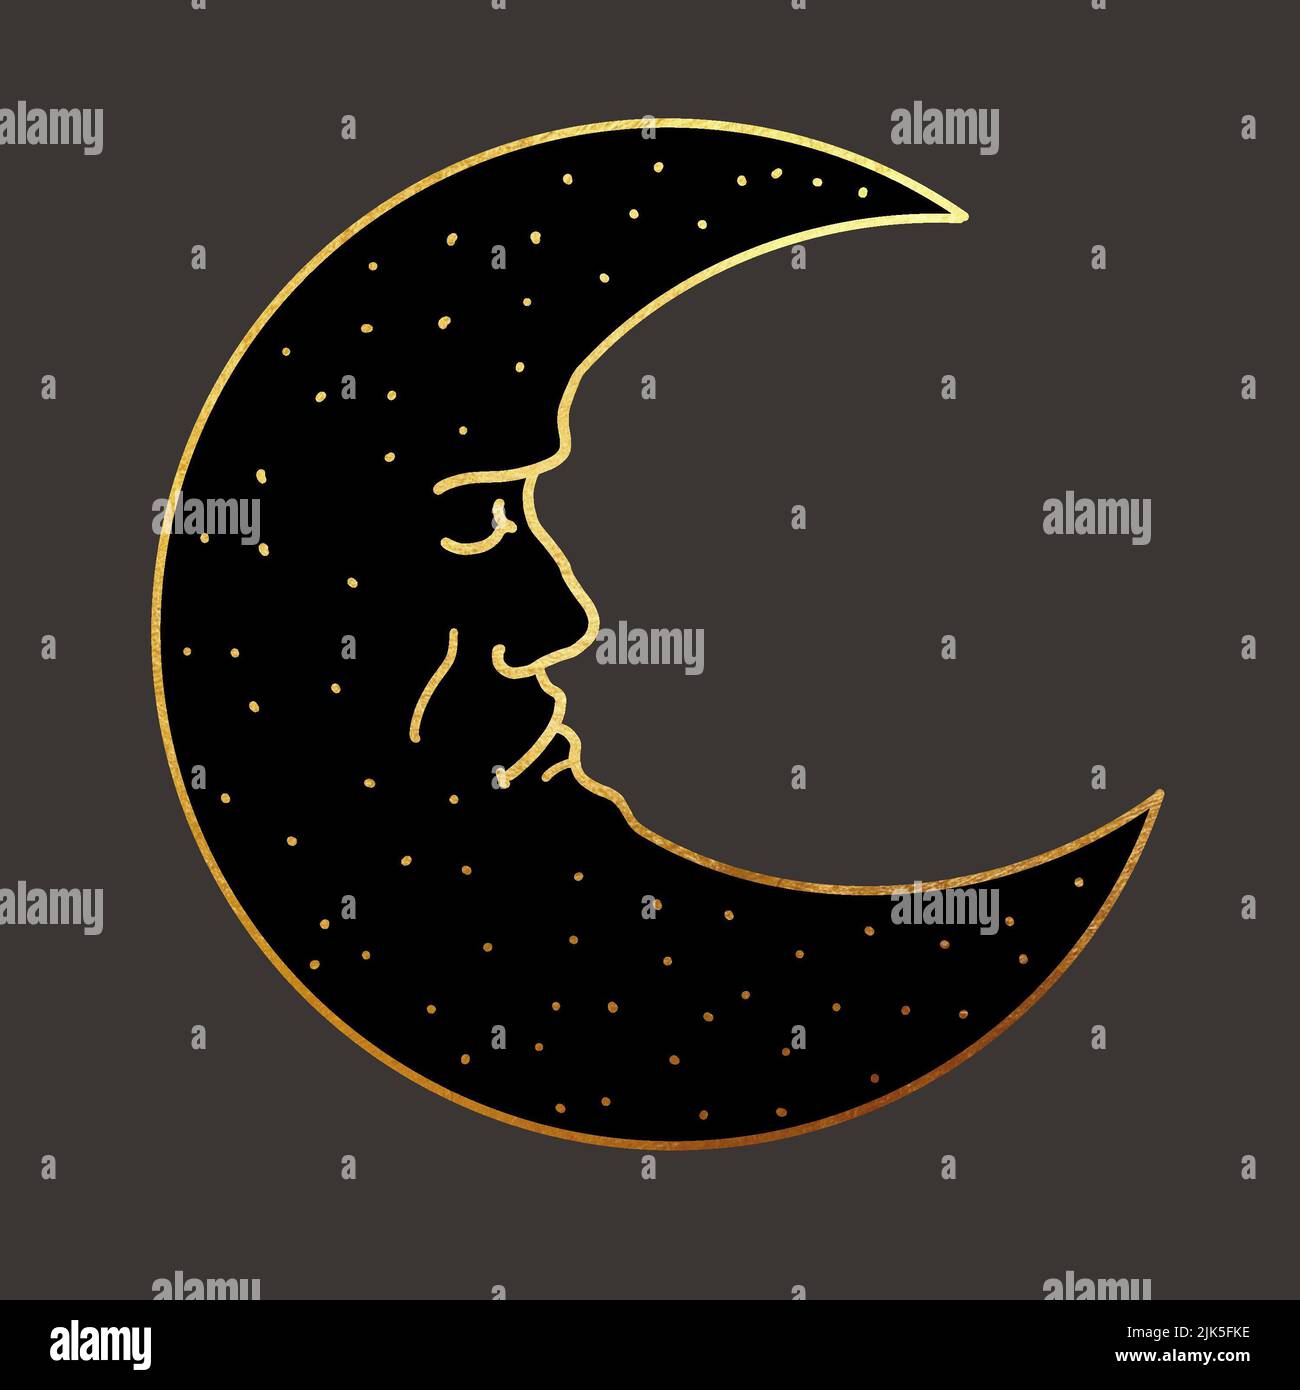 Illustration d'un croissant de lune. Carte de tarot lunaire. Illustration graphique avec lignes dorées sur fond sombre Banque D'Images